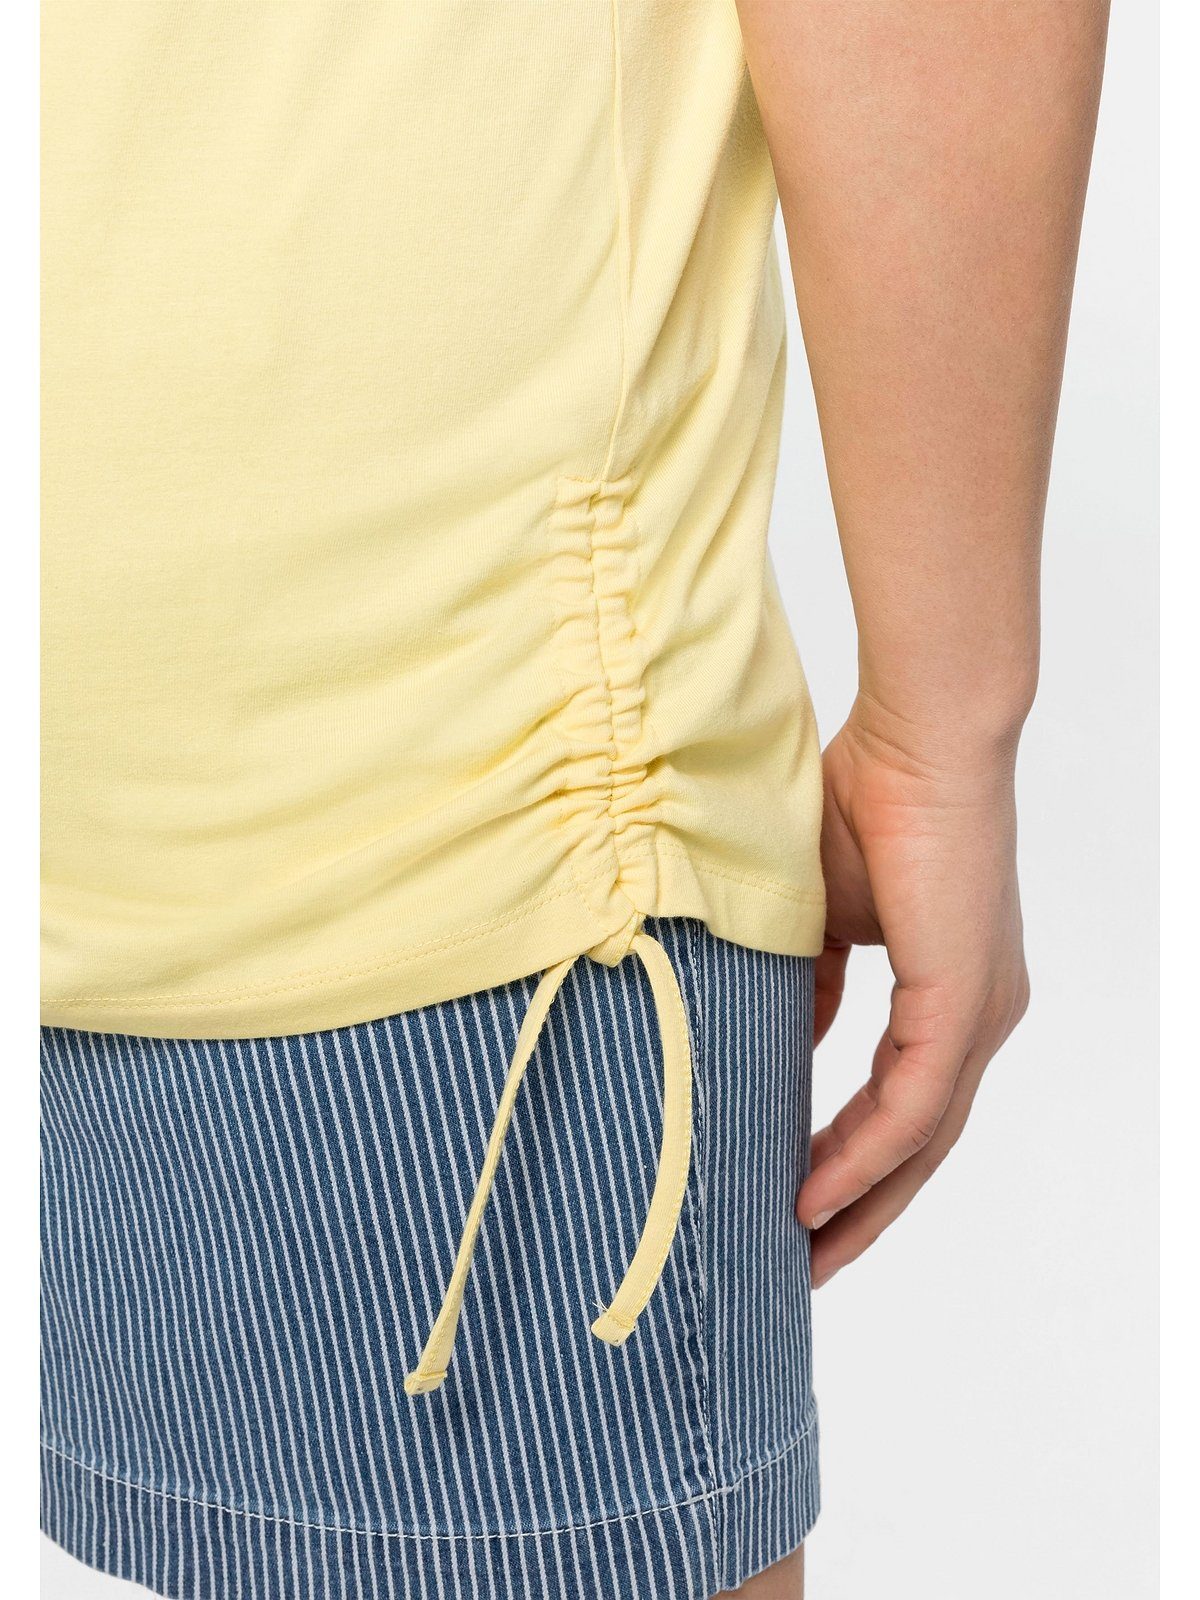 Sheego T-Shirt Große Größen Raffung Bindeband und seitlicher mit hellgelb